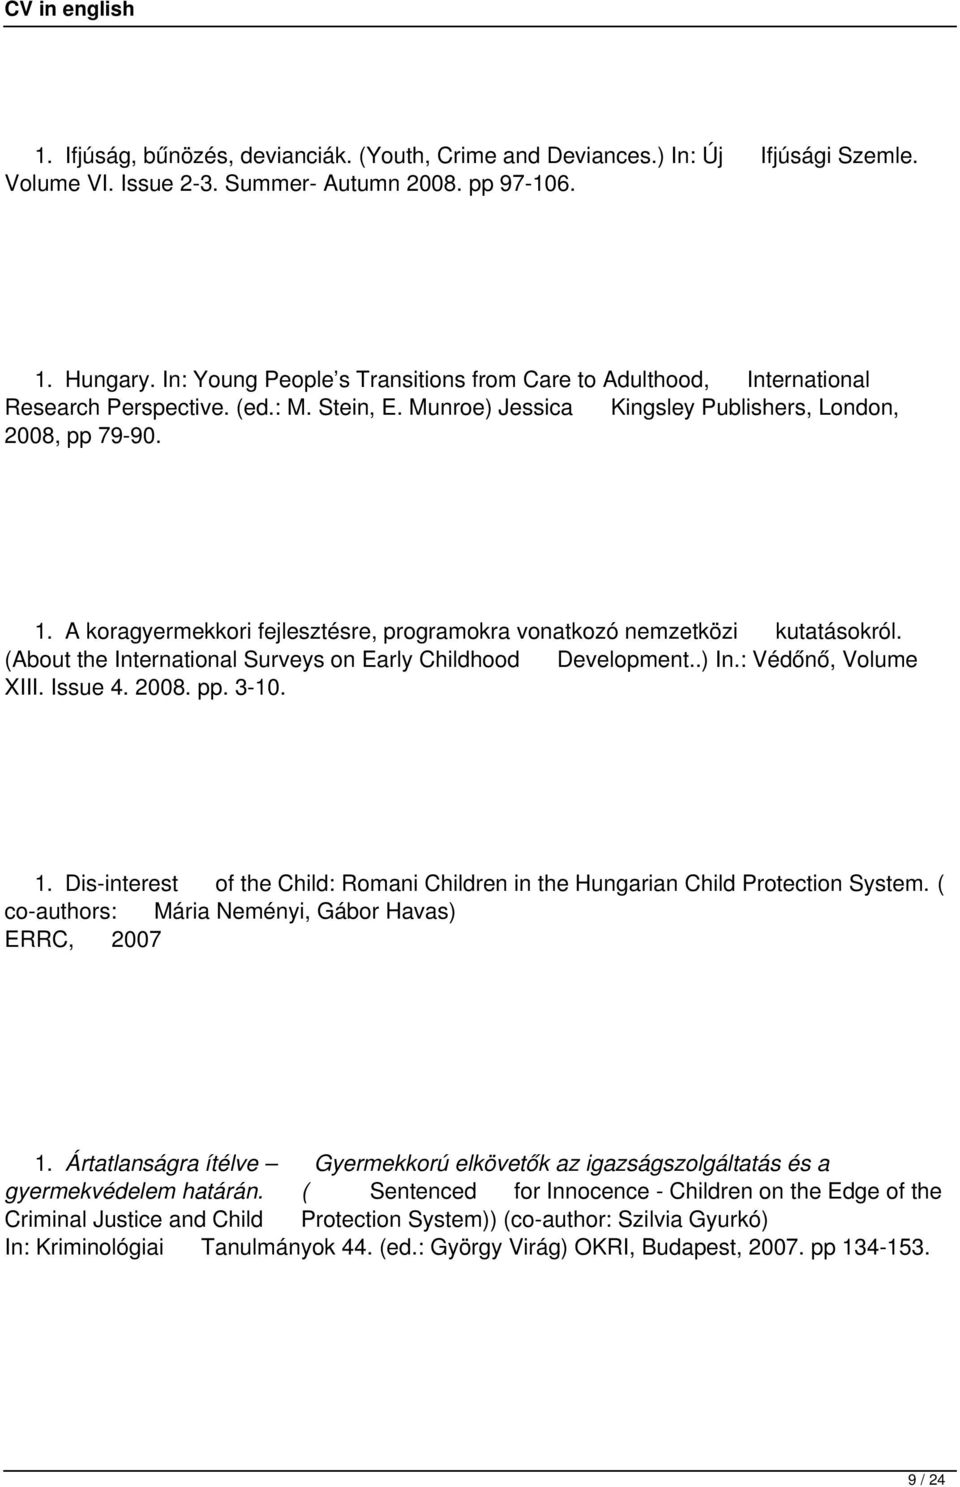 A koragyermekkori fejlesztésre, programokra vonatkozó nemzetközi kutatásokról. (About the International Surveys on Early Childhood Development..) In.: Védőnő, Volume XIII. Issue 4. 2008. pp. 3-10. 1.